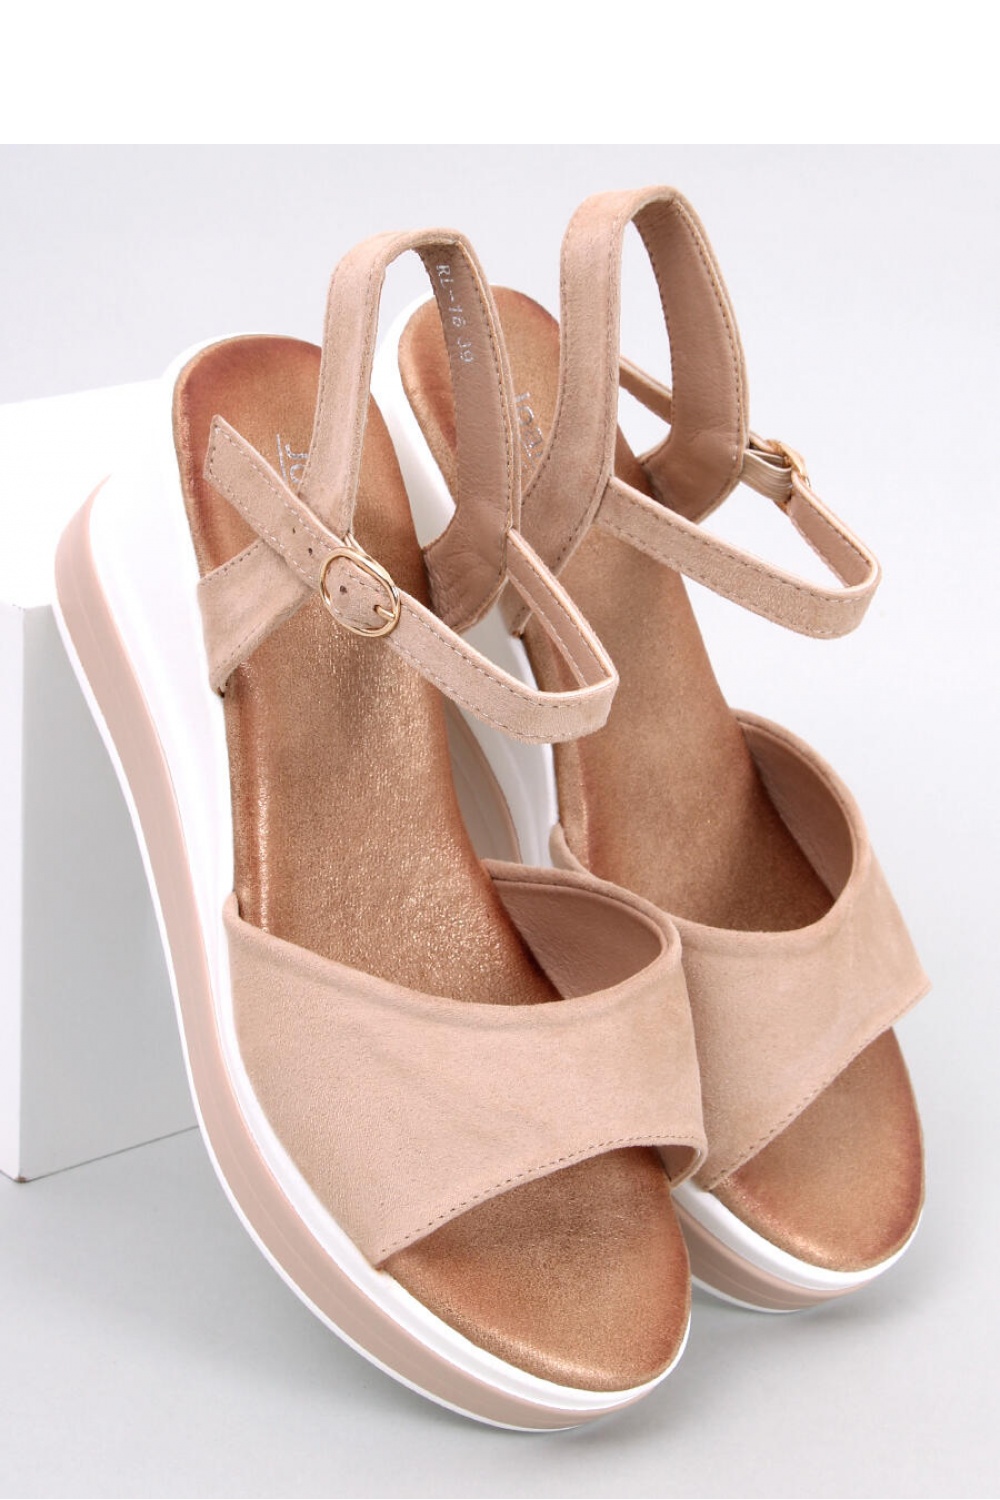 Sandalen mit Absatz model 179406 Inello beige Damen